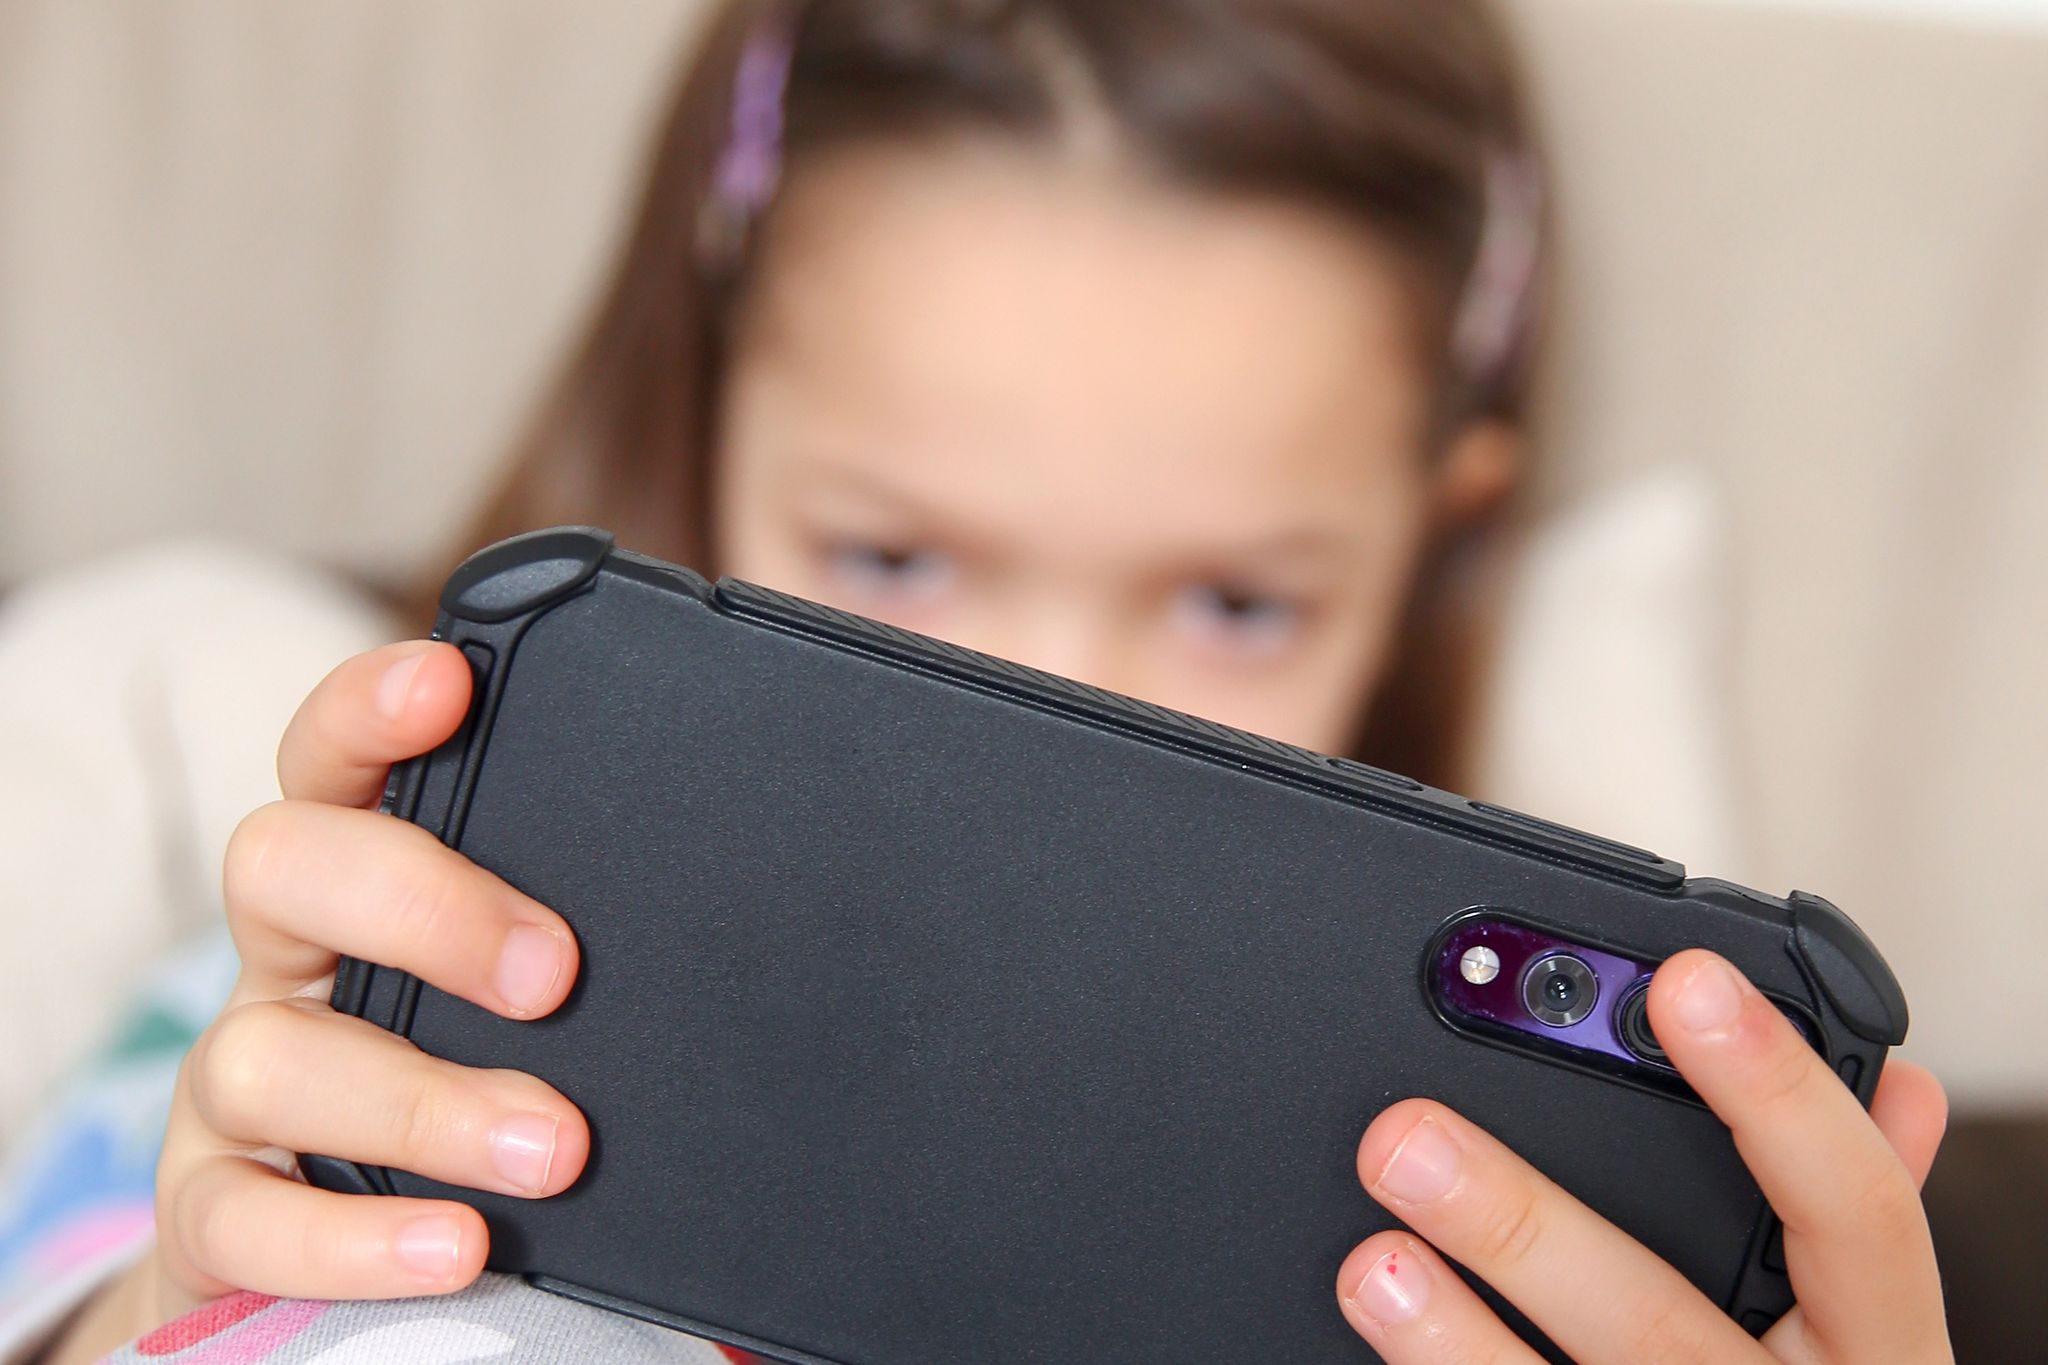 Los niños y niñas deben ser cuidadas cuando usan juegan en Internet o usan dispositivos inteligentes (Foto: Mascha Brichta/dpa)